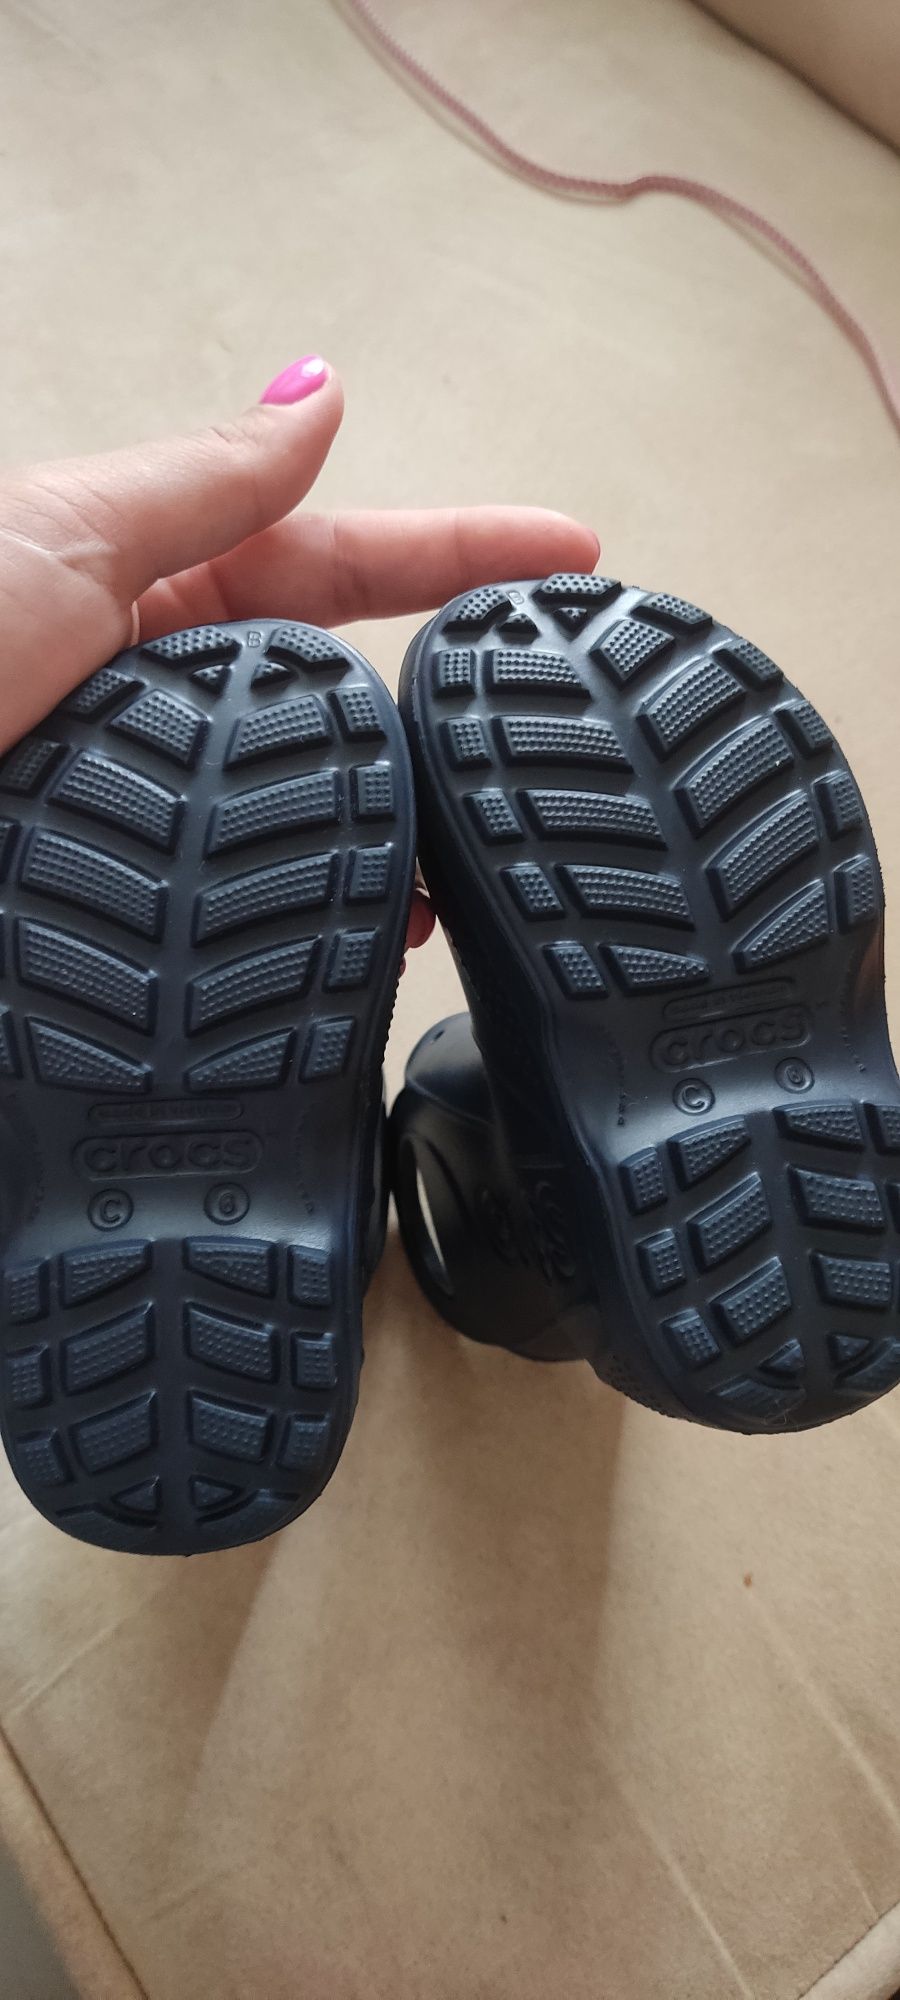 Crocs дитячі с6 сині гумові чобітки сапожки,нові. Оригінал.